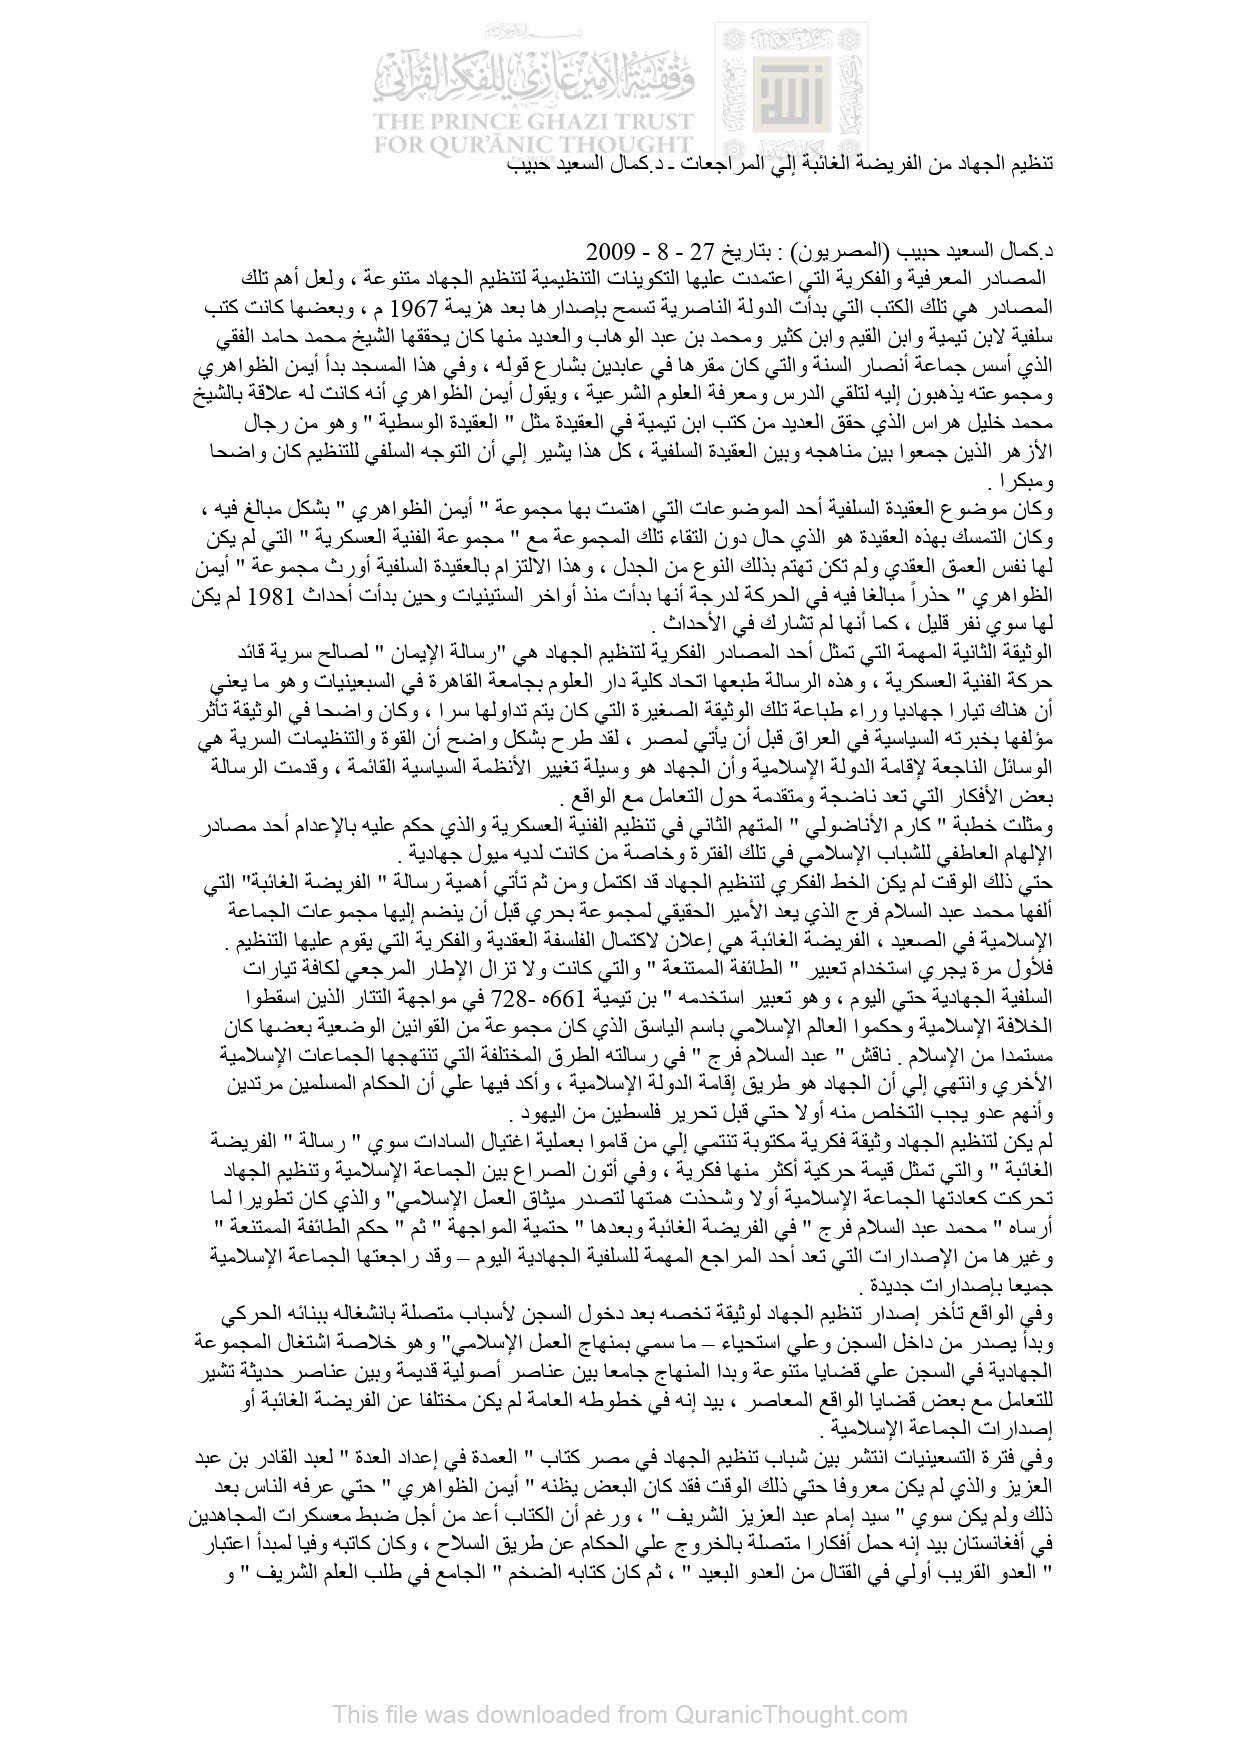 تنظيم الجهاد من الفريضة الغائبة إلى المراجعات _ مقالة في جريدة المصريون